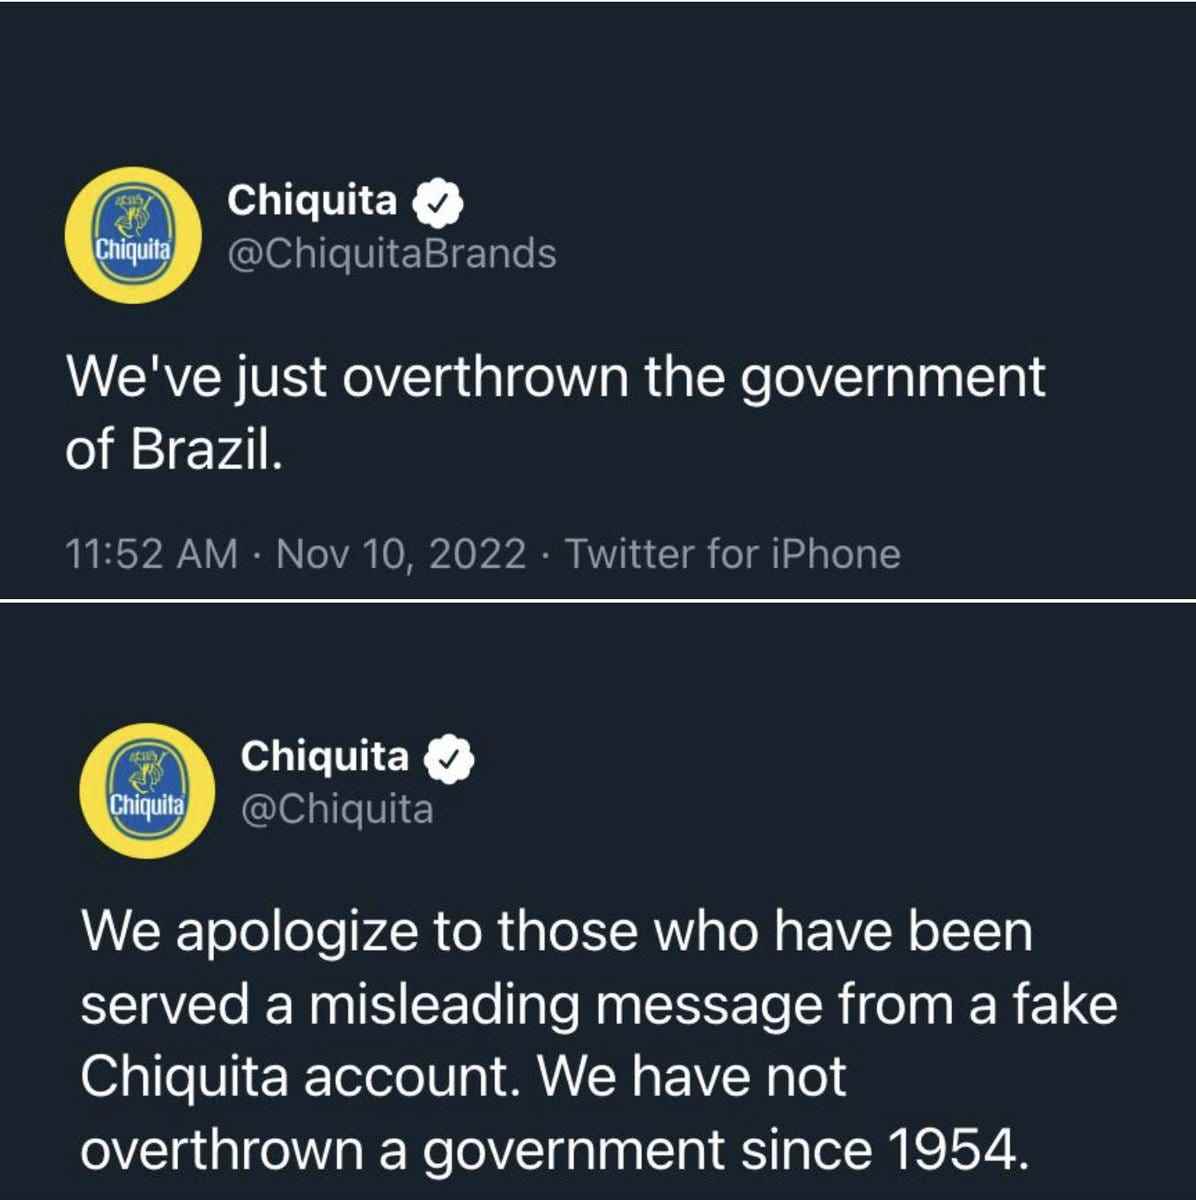 Tweet von einem Chiquita-Imitator, gefolgt von einer Entschuldigung des echten Chiquita-Kontos.